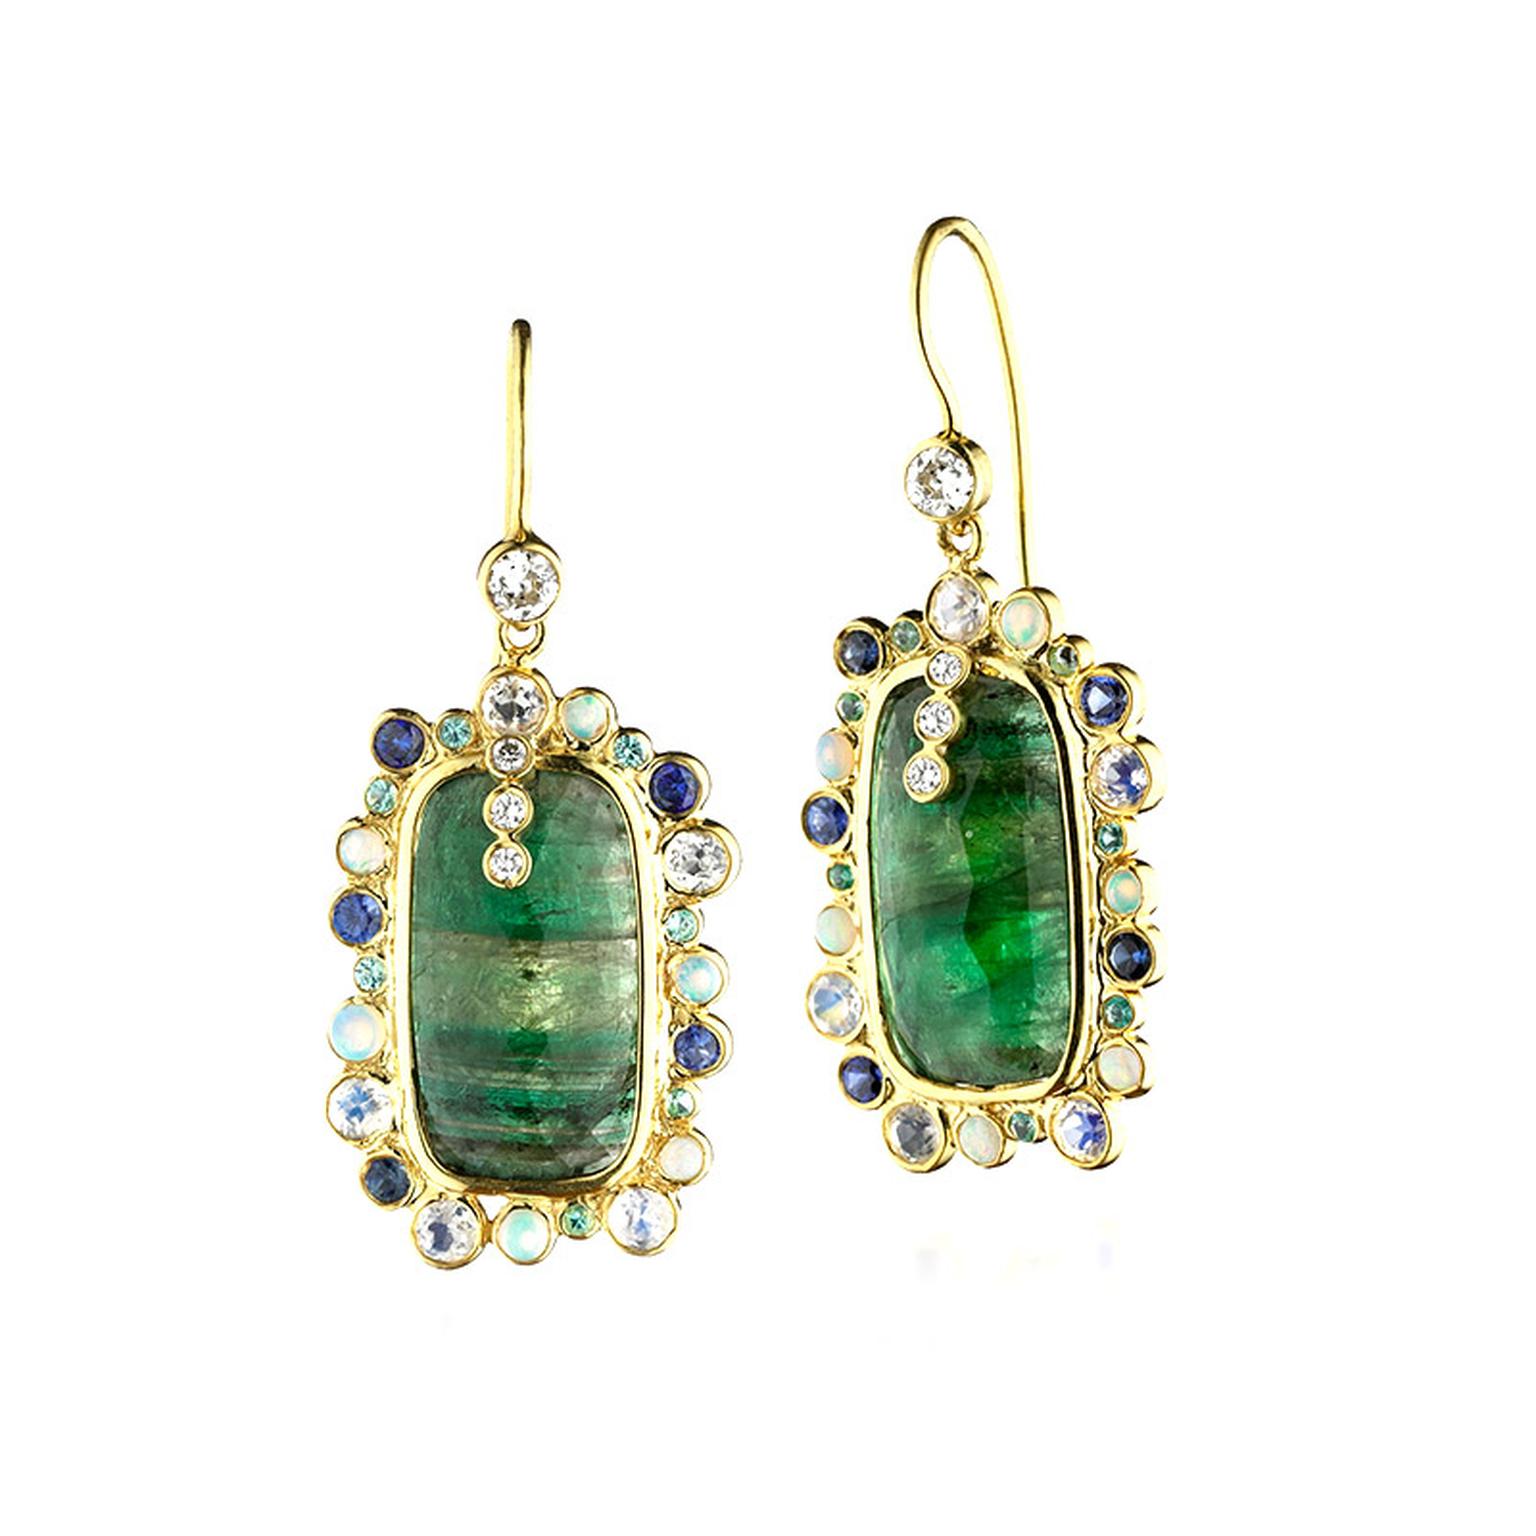 Malak Atut Zaiken Colombian emerald earrings